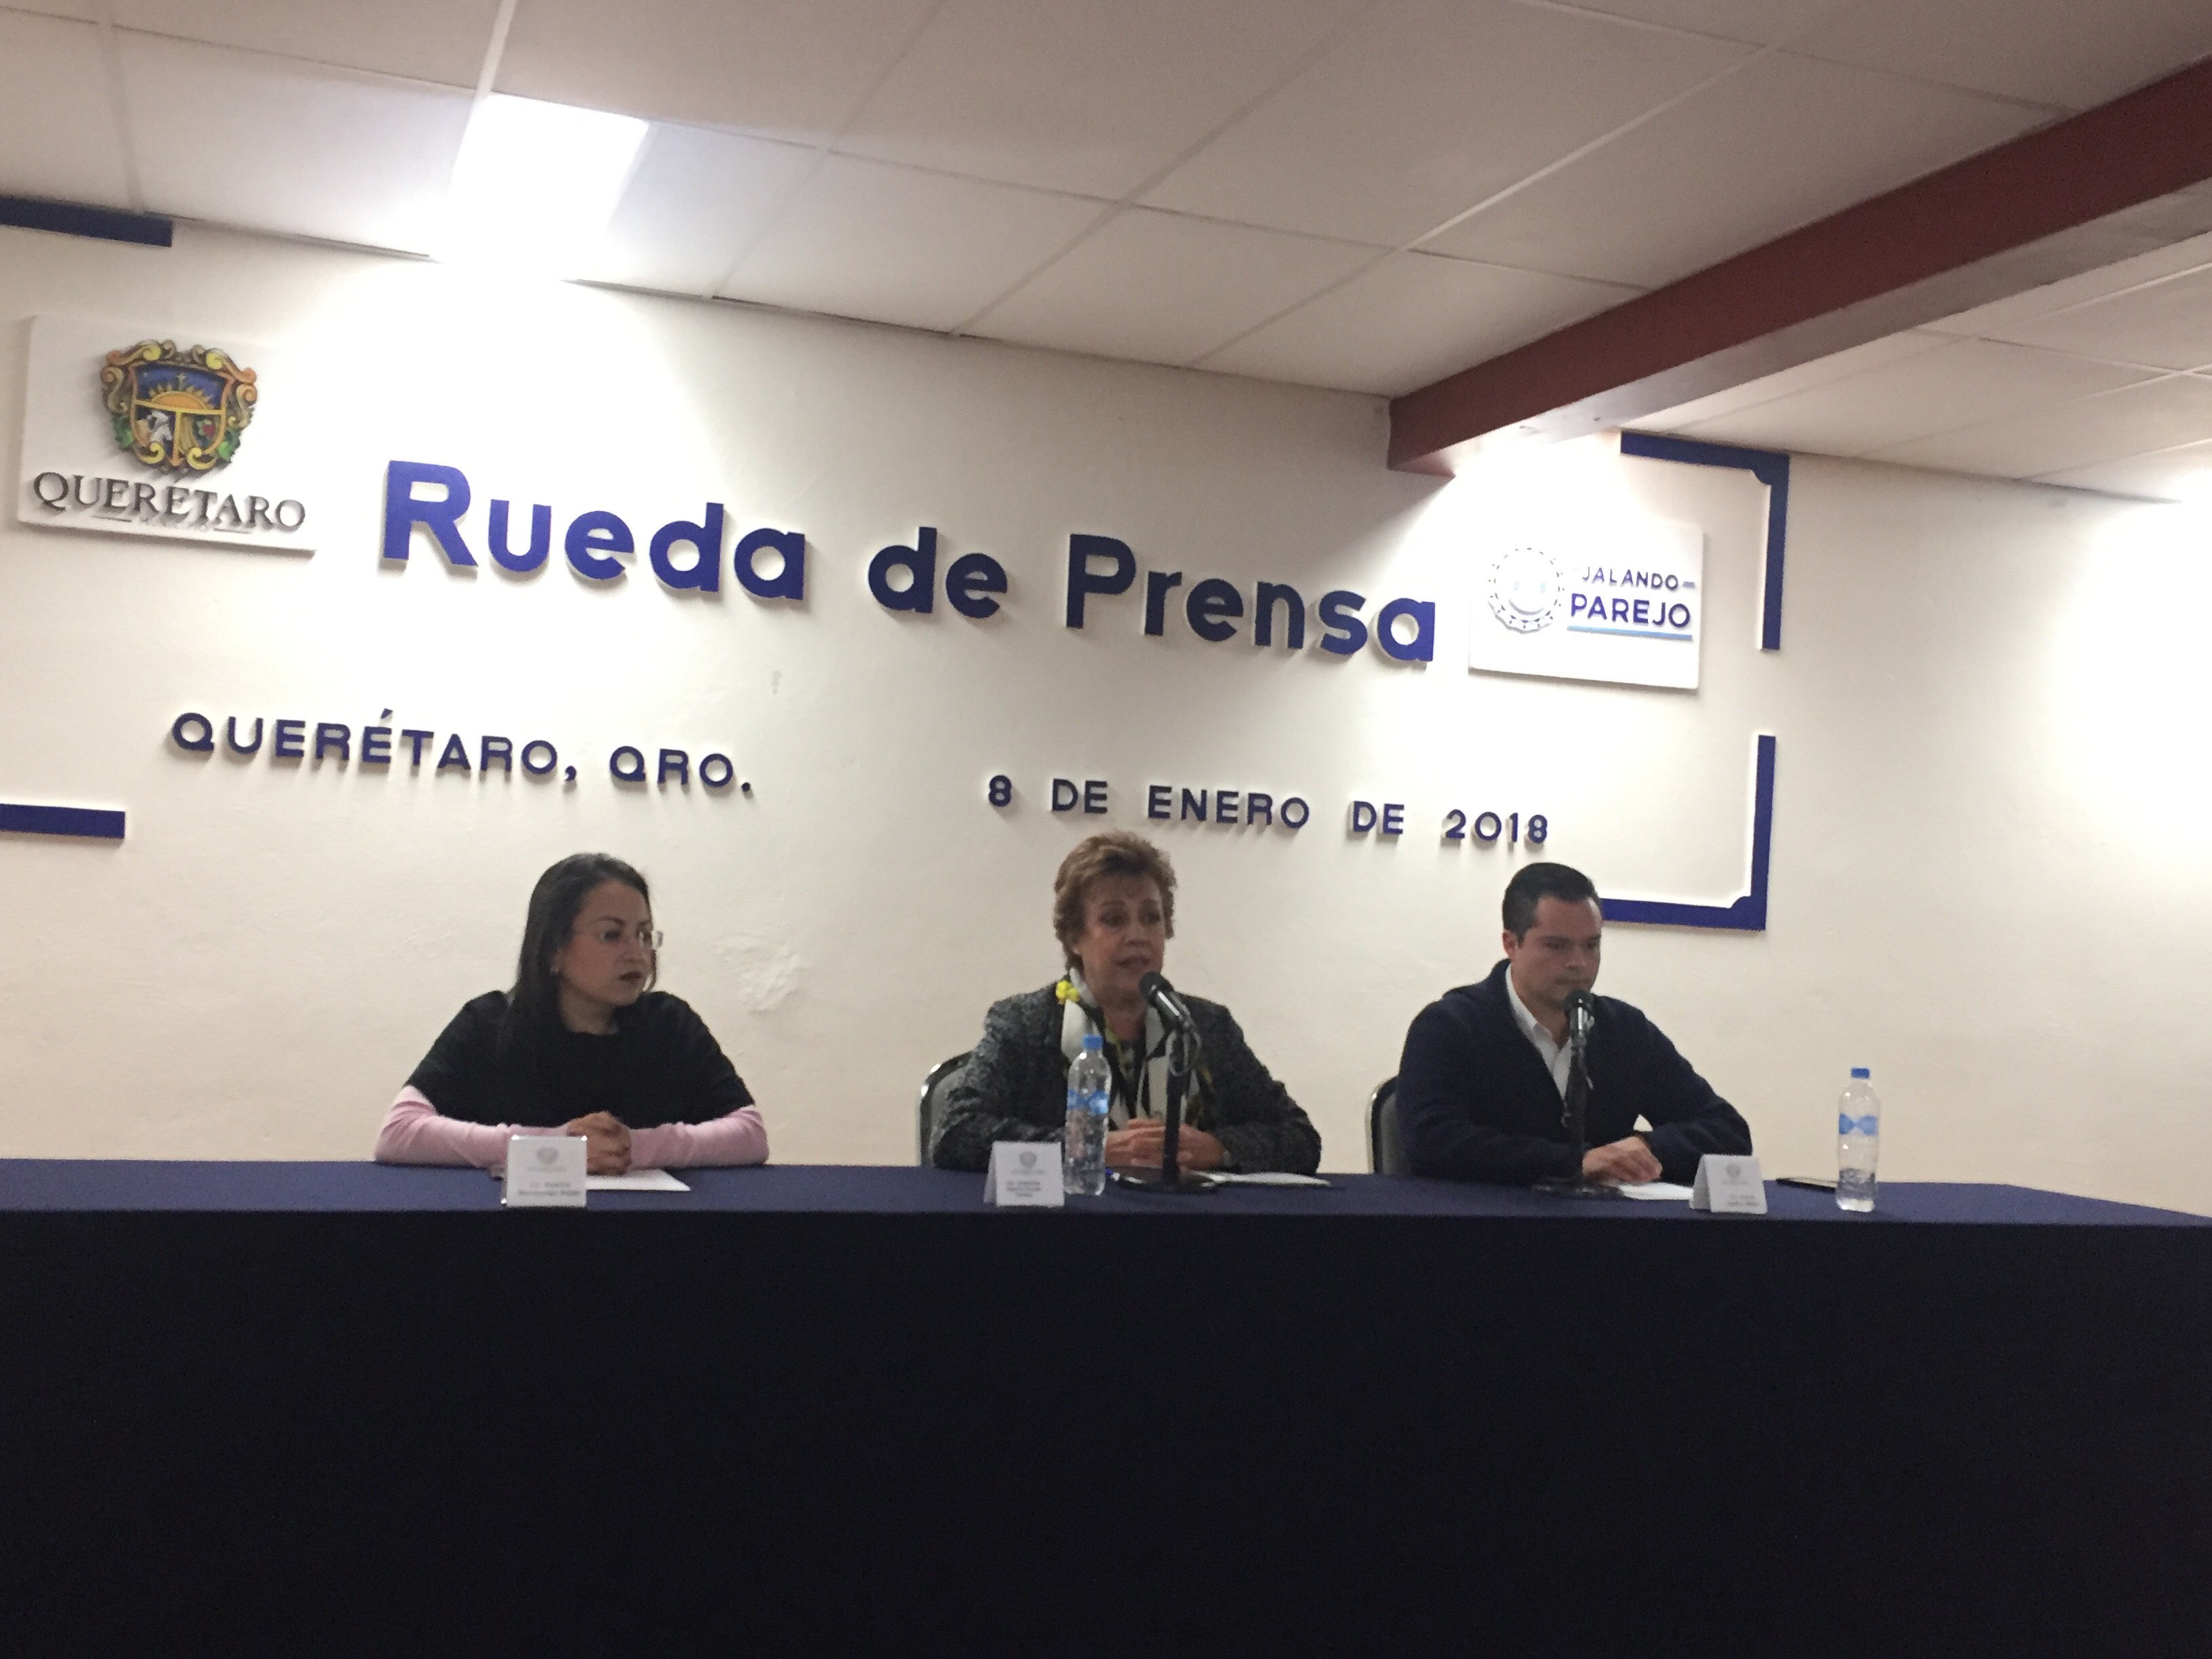  Municipio de Querétaro presenta becas de movilidad internacional “Vive México”